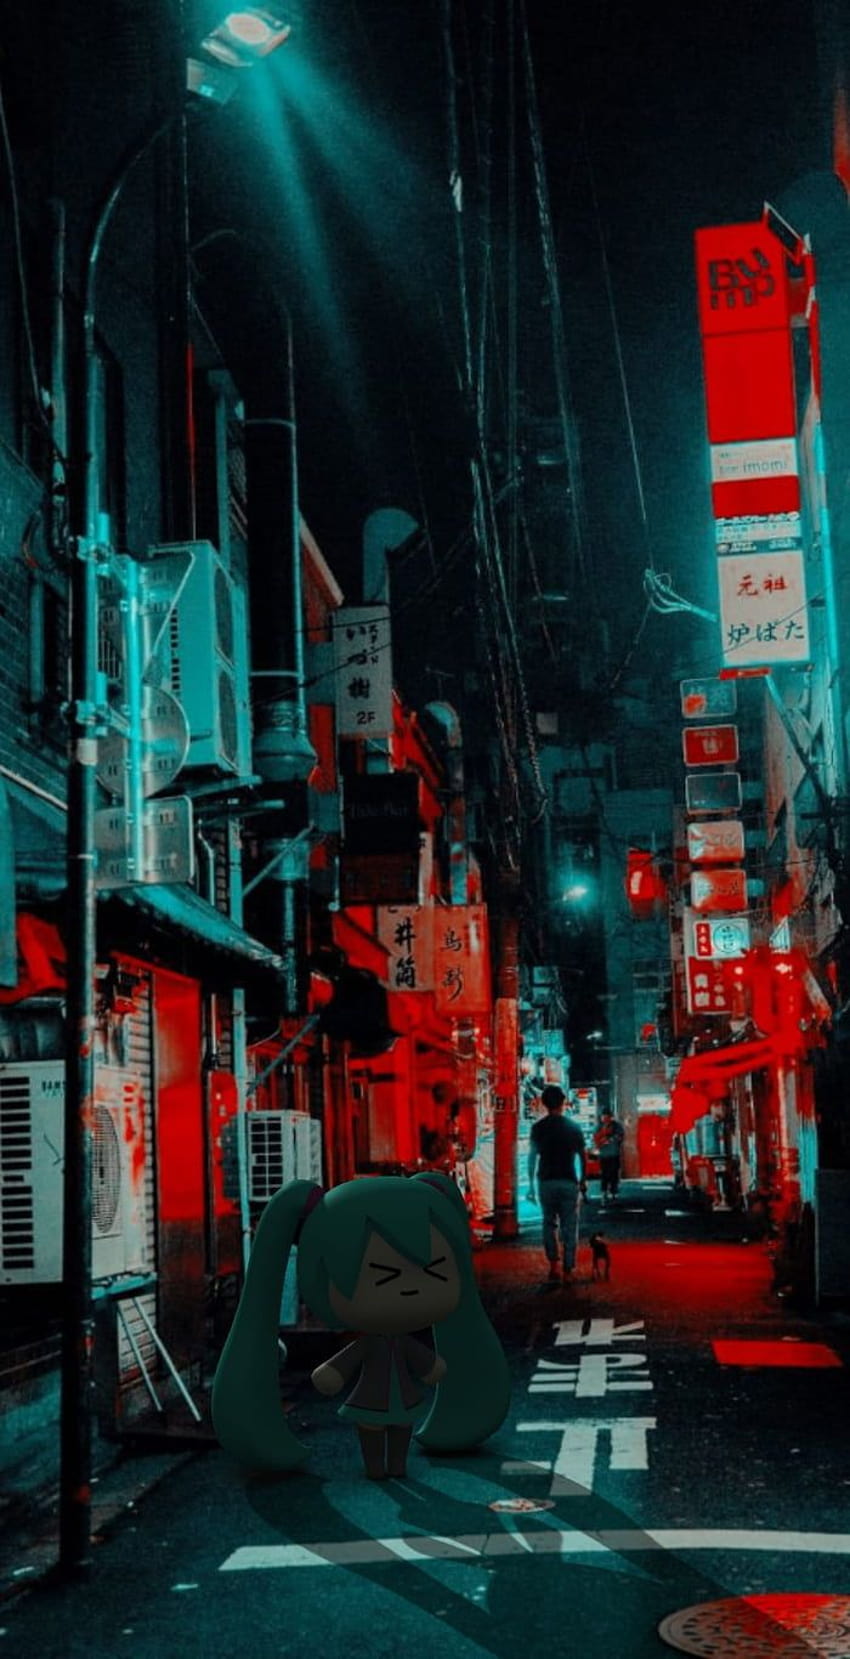 Với đường phố đầy tiện nghi và sự kết hợp giữa cổ kính và hiện đại, không gì tuyệt vời hơn khi được tận hưởng khung cảnh thành phố Nhật Bản đặc trưng với sự tinh tế. Hãy cùng tìm hiểu trong bức ảnh này nhé.